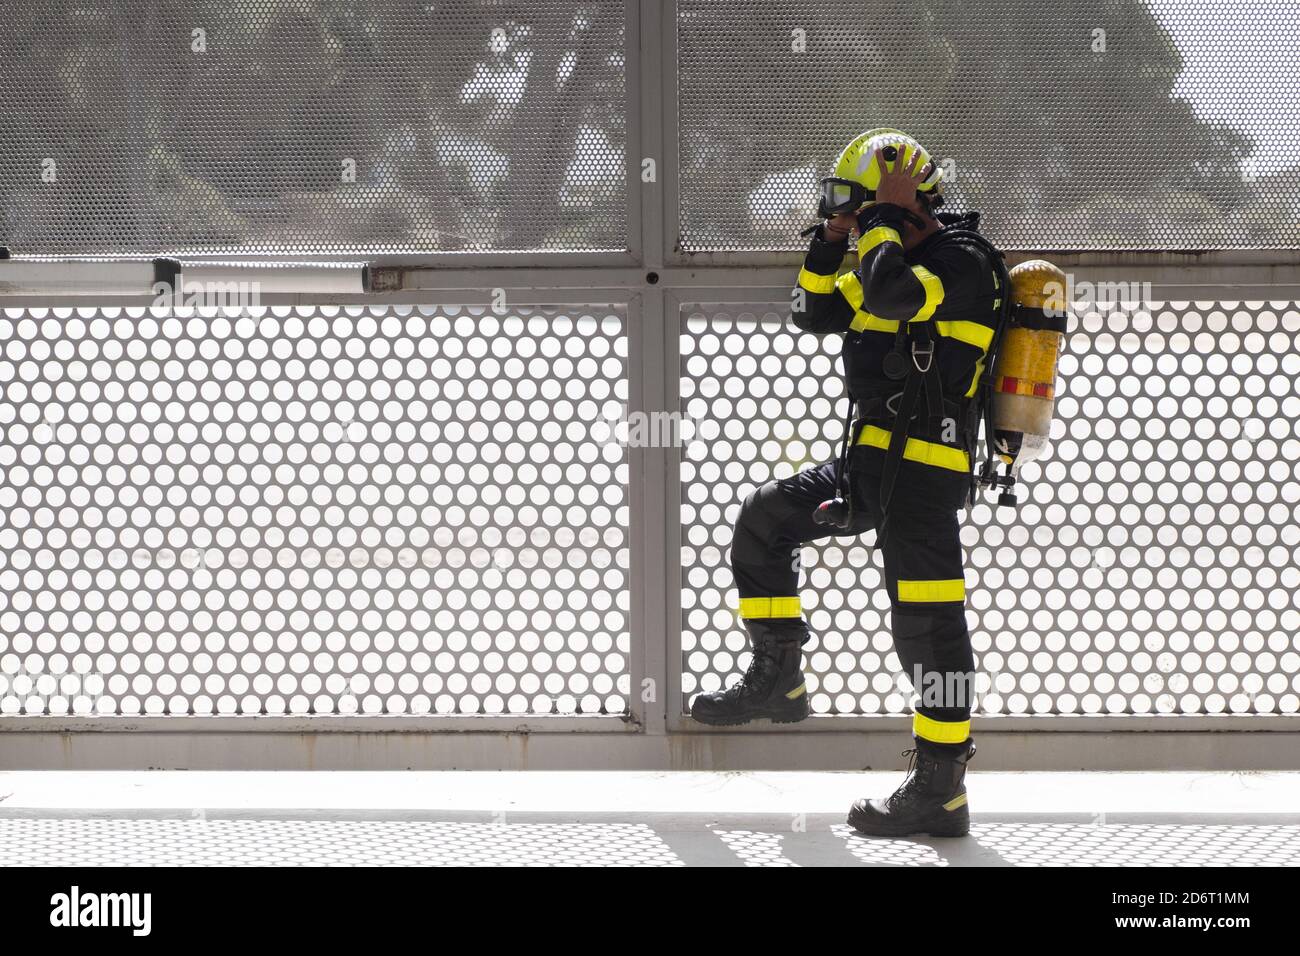 Seitenansicht der unrasierten Feuerwehrmann in bunten Uniform Anziehen hardhat beim Stehen mit Feuerlöscher in der Nähe von Gitter Zaun und Wegschauen Stockfoto